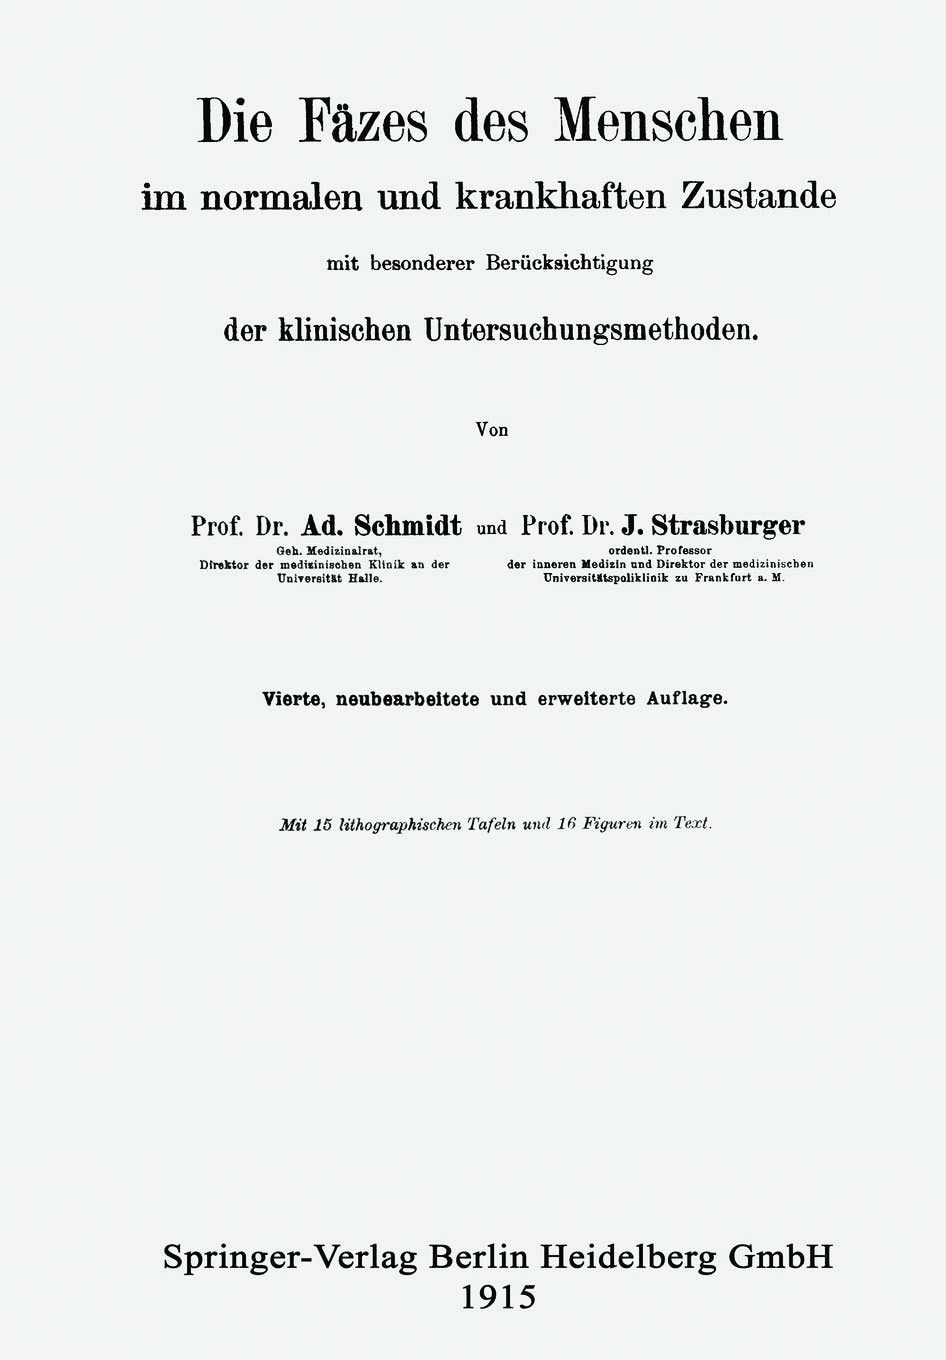 Schmidts und Strasburgers Standardpublikation der damaligen Zeit zur Dickdarmpathologie